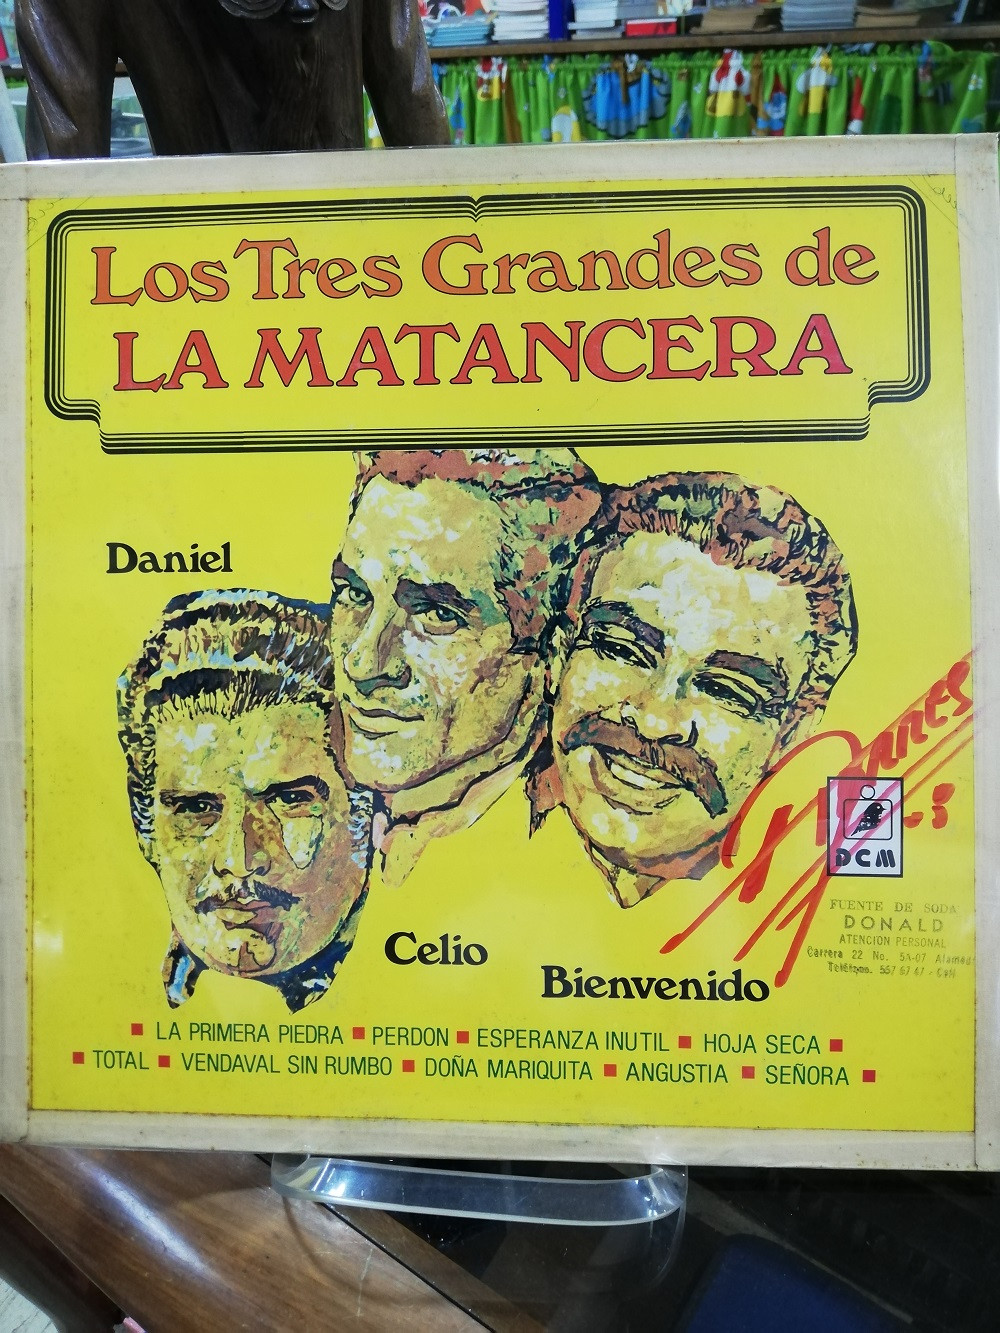 Imagen LP DANIEL SANTOS/CELIO GONZALEZ/BIENVENIDO GRANDA - LOS TRES GRANDES DE LA MATANCERA 1